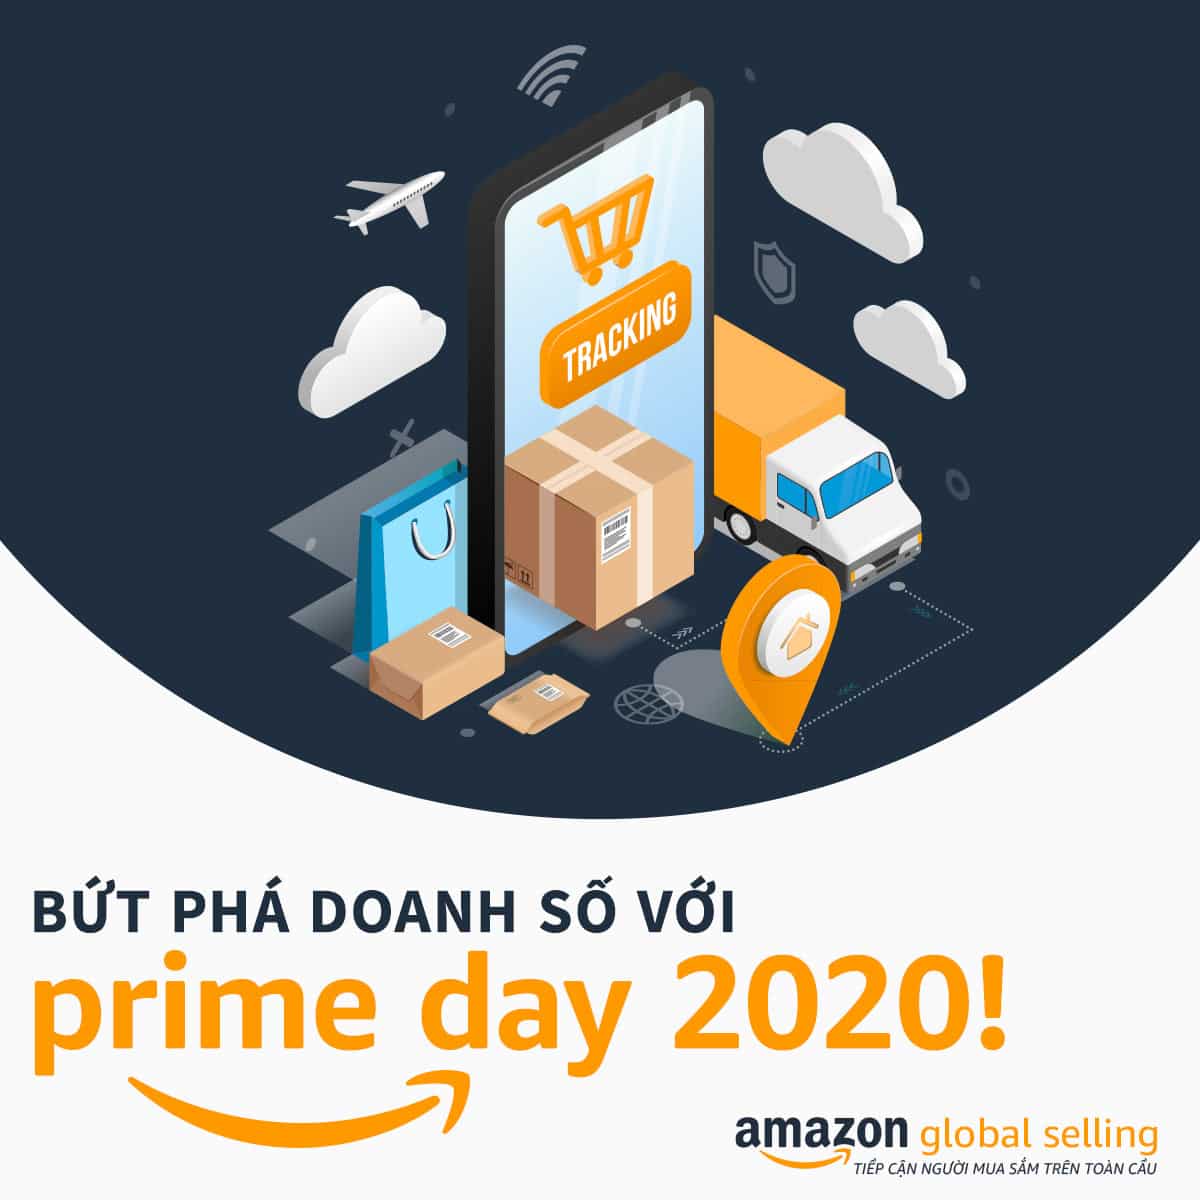 Amazon Prime Day 2020 tiếp tục ghi nhận doanh số kỷ lục từ các Doanh nghiệp vừa và nhỏ